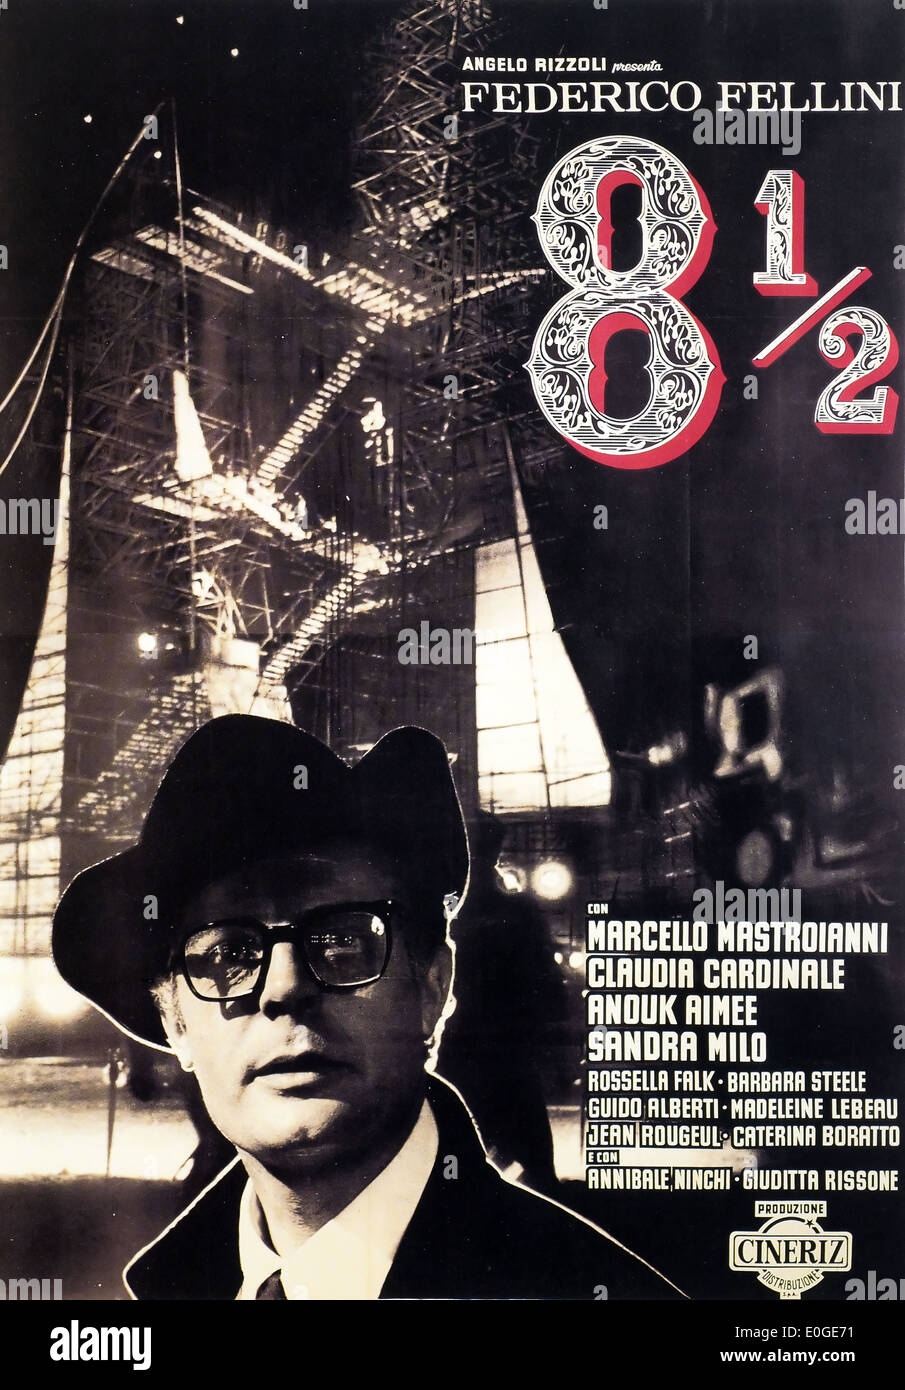 8 1/2 - Frederico Fellini - Póster de la película original en italiano Foto de stock